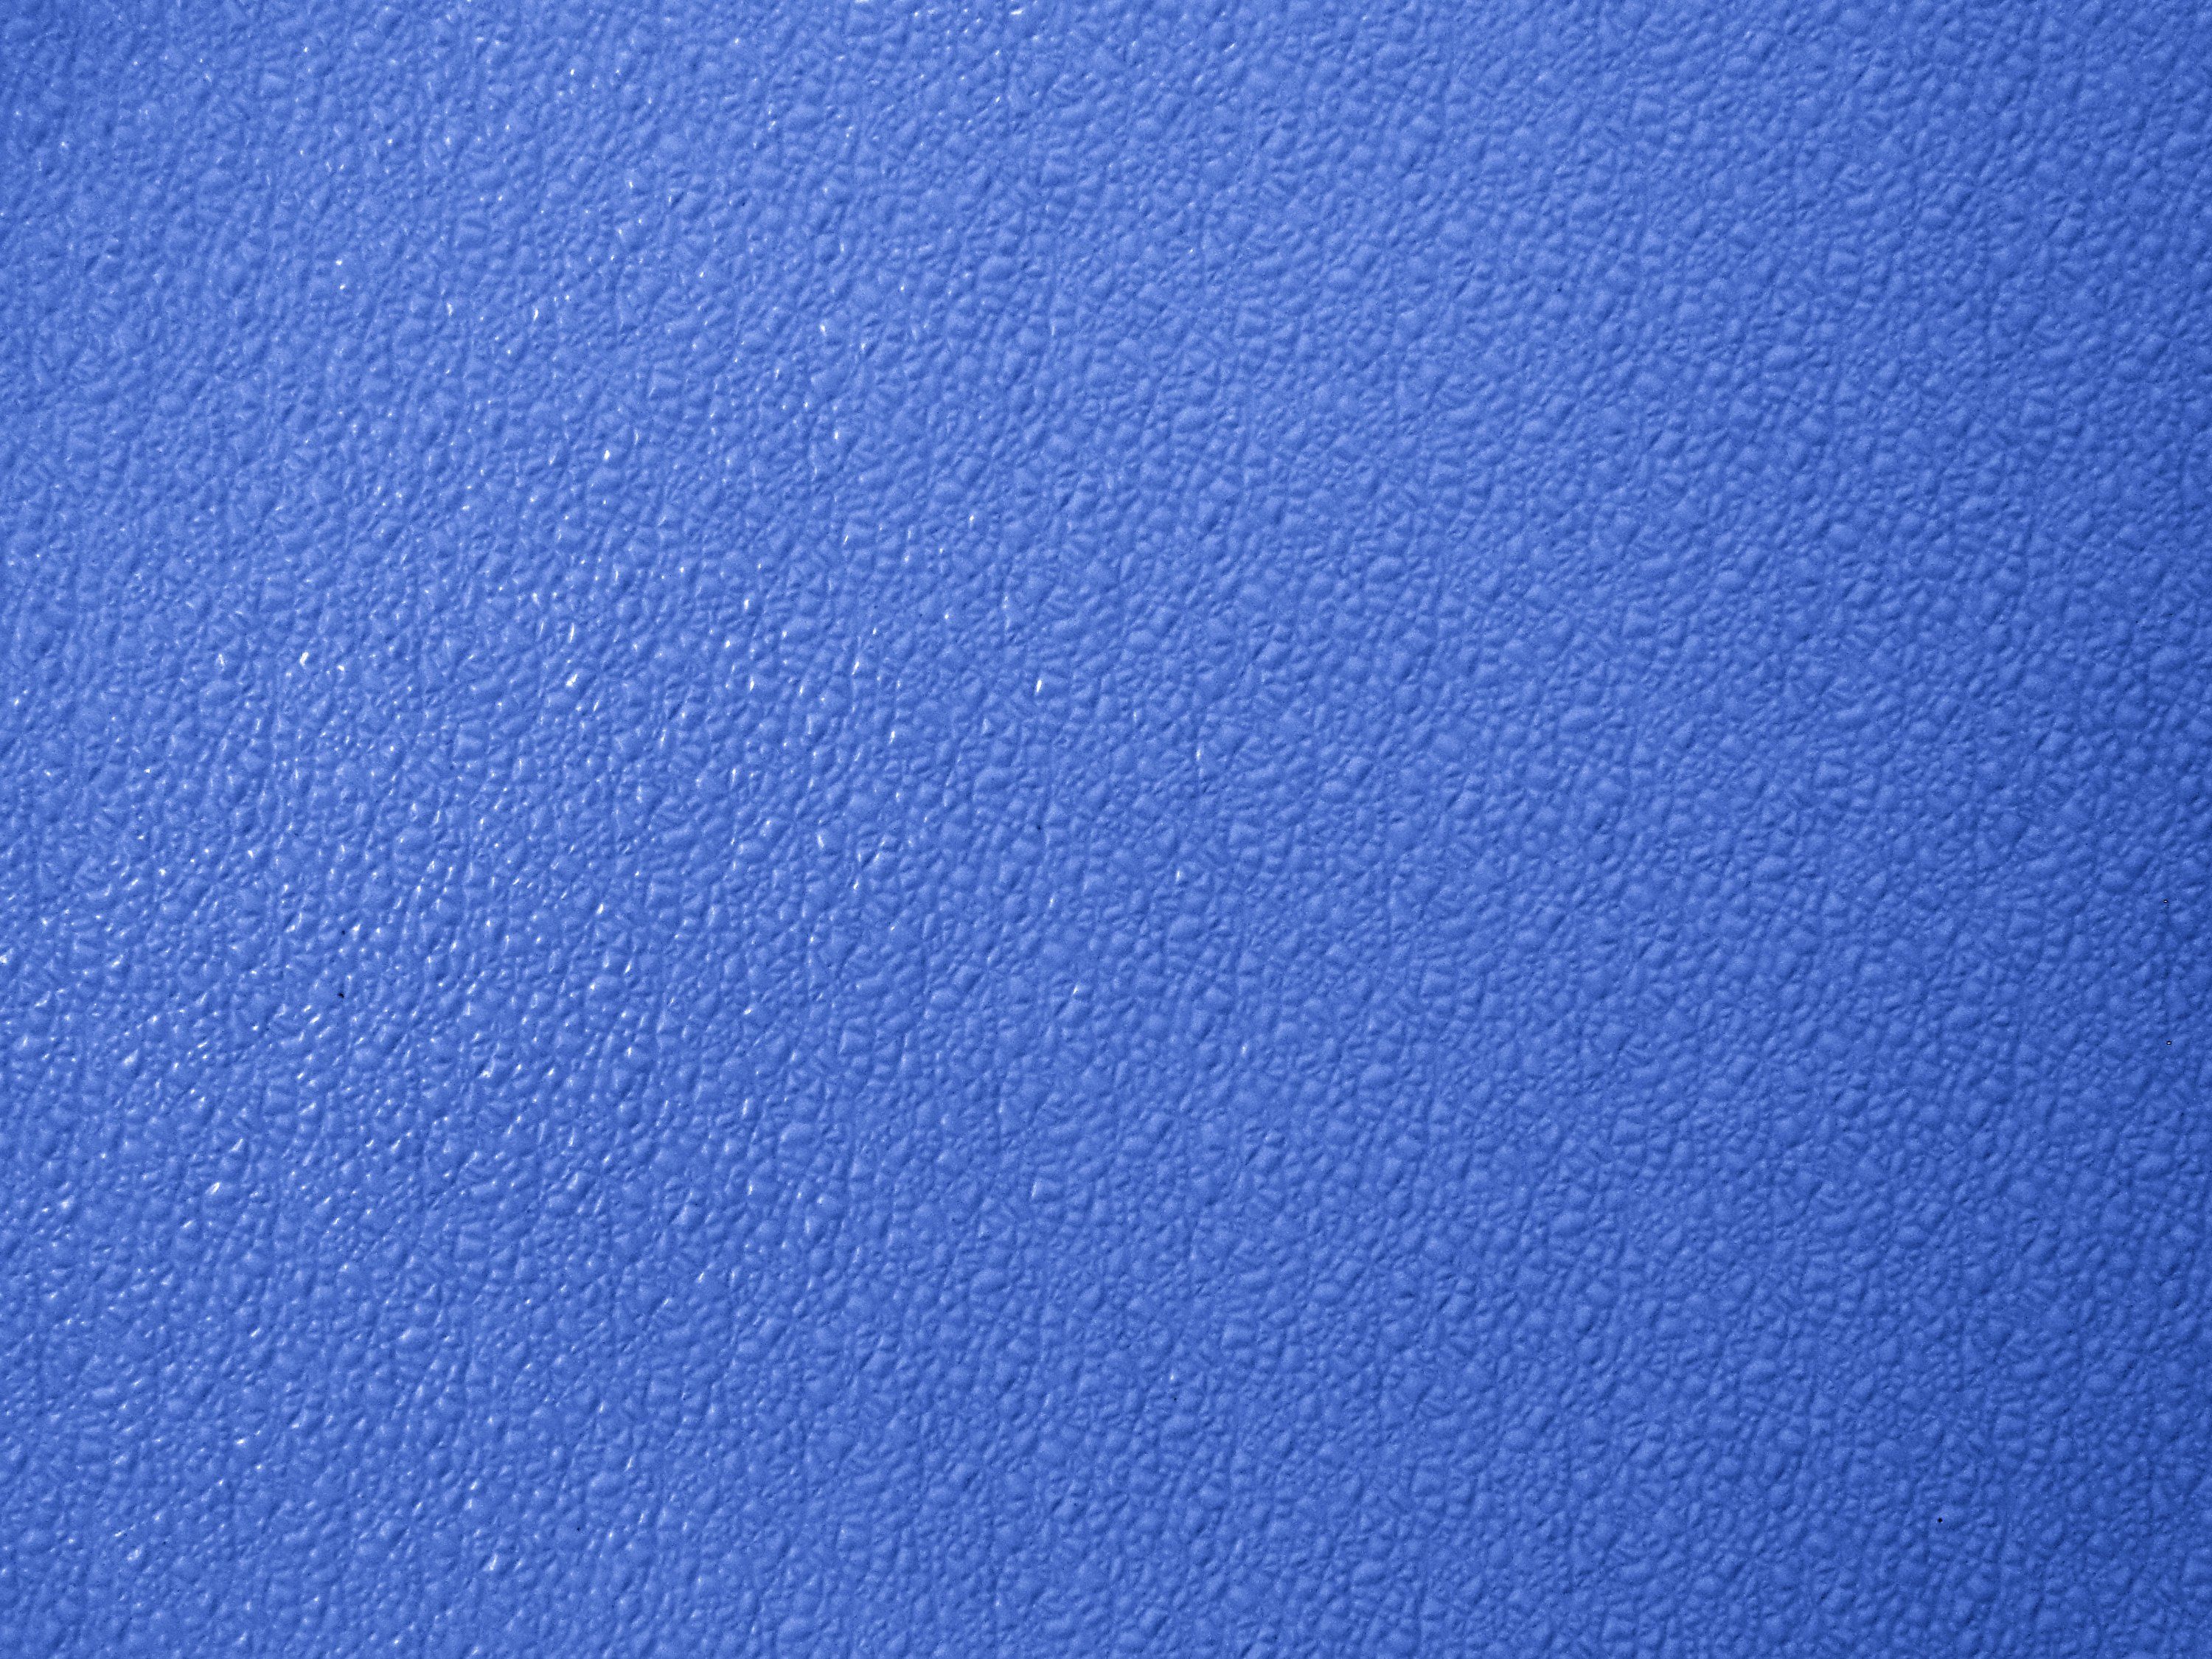 Bumpy Periwinkle Blue Plastic Texture Picture. Free Photograph. Photo Public Domain